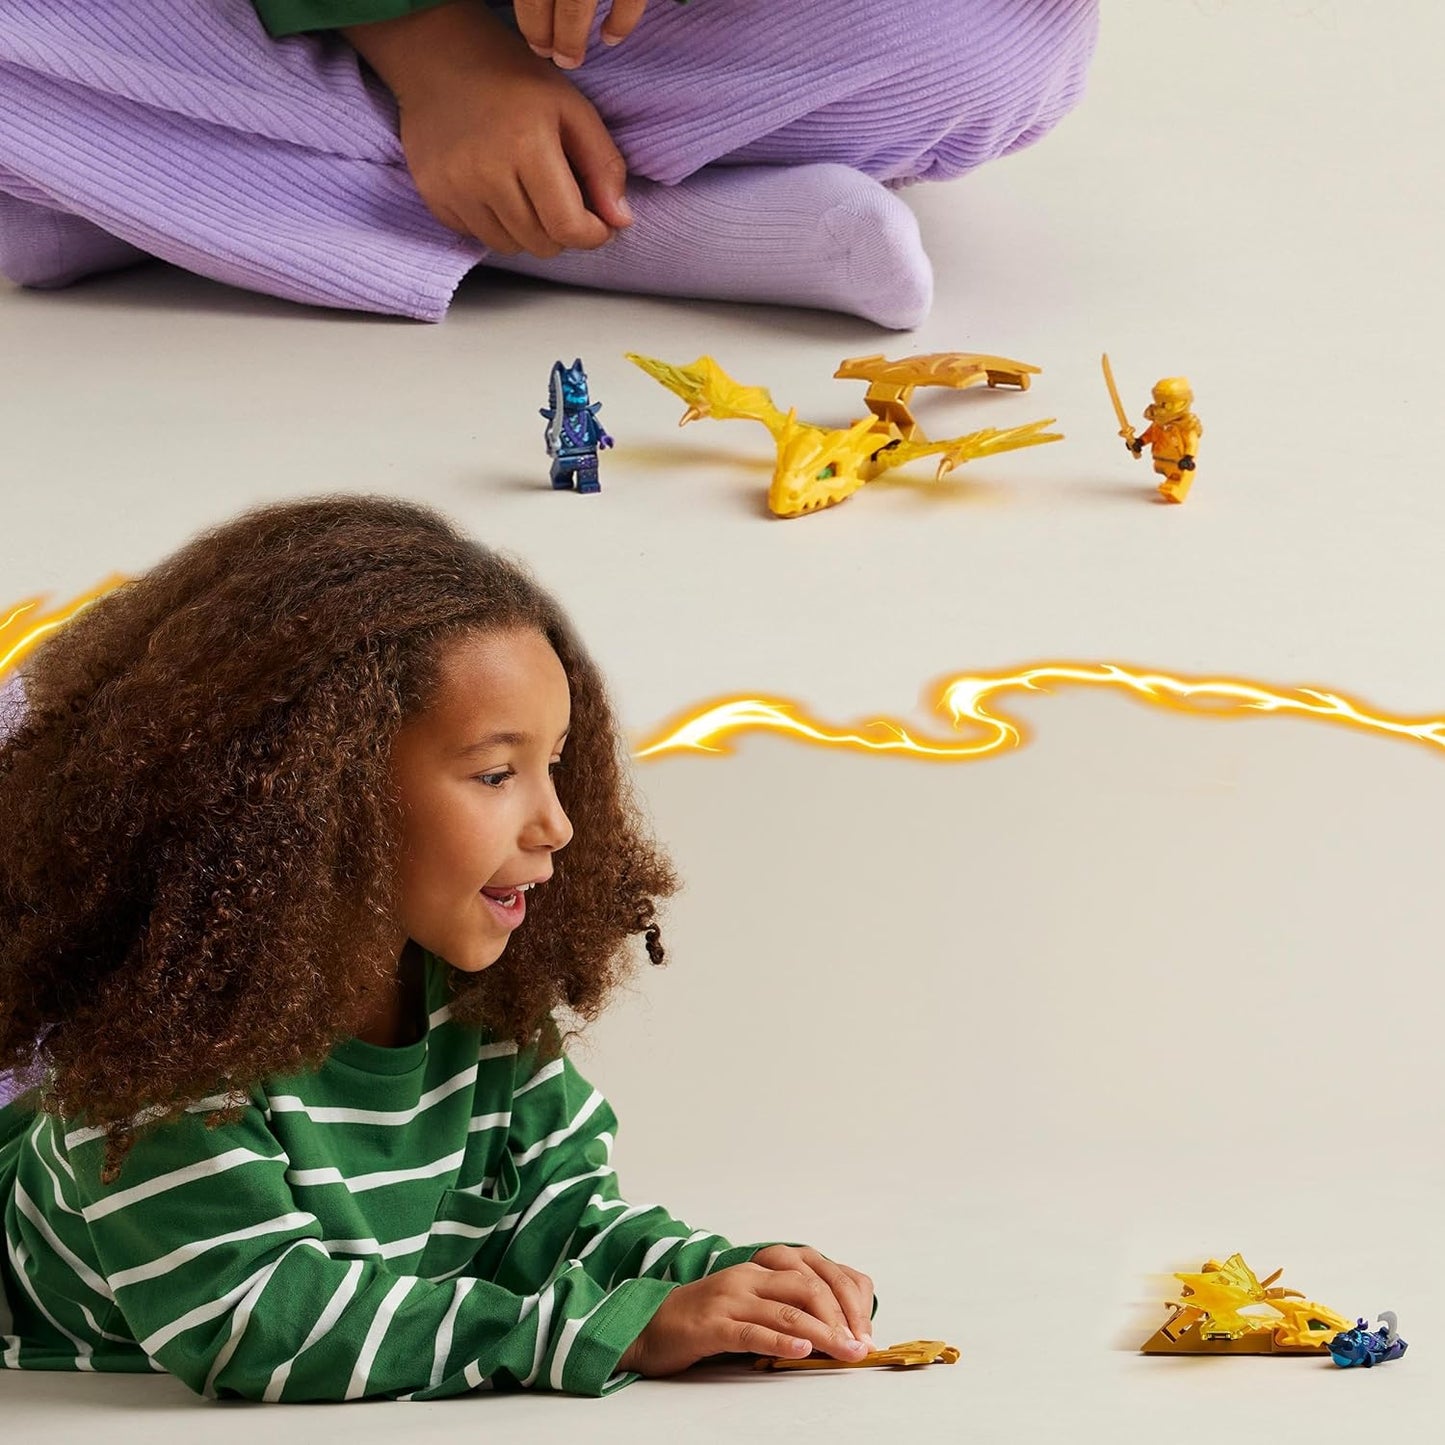 LEGO Brinquedo NINJAGO Arin’s Rising Dragon Strike, conjunto de figuras ninja amarelas para meninos, meninas e crianças de 6 anos ou mais, com minifigura de Arin e acessório de espada Katana, brinquedos de construção